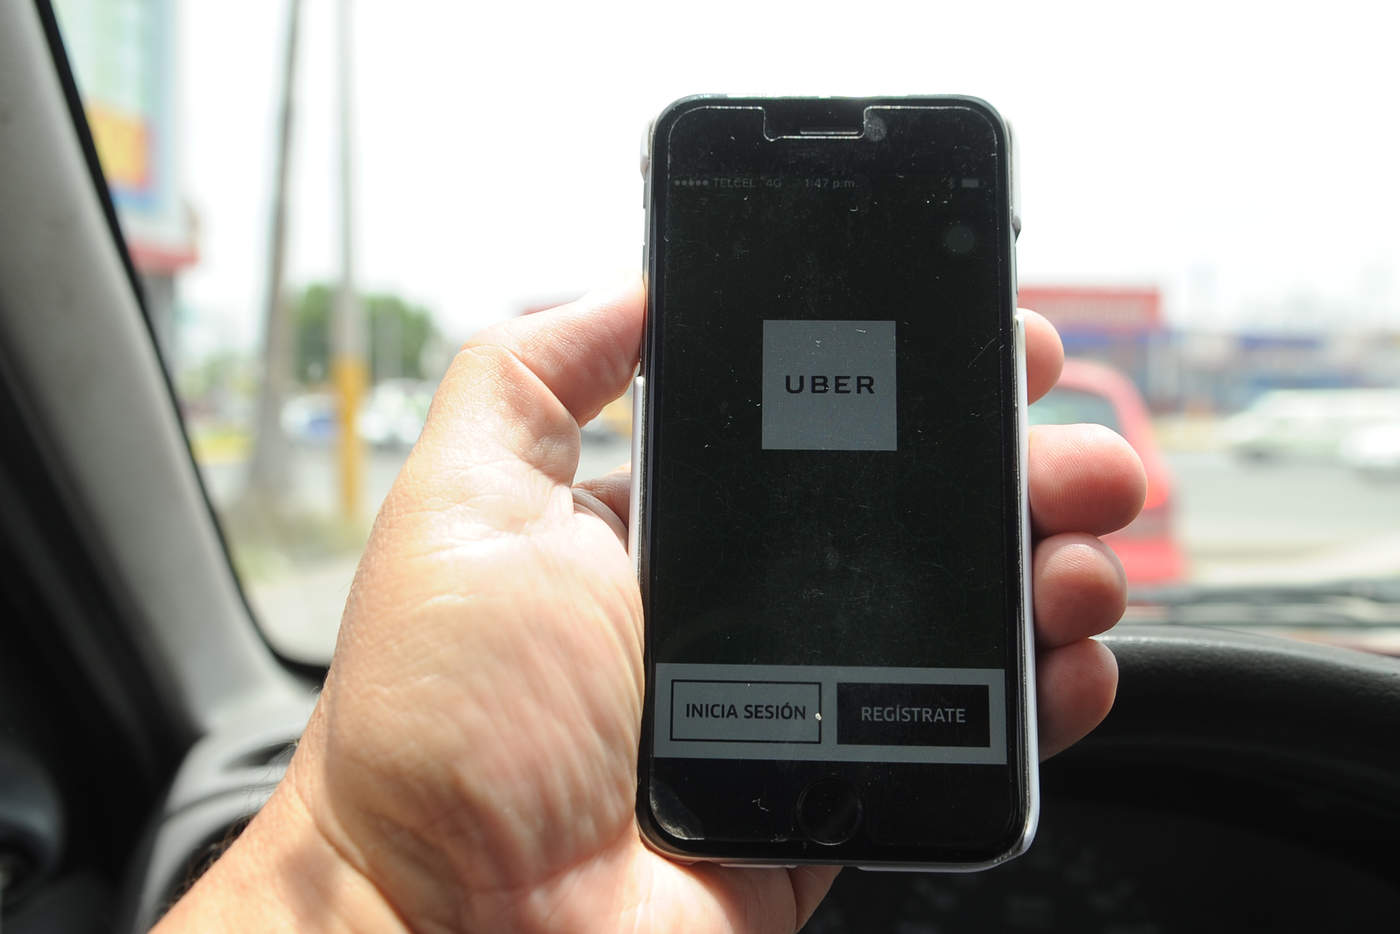 Servicio de Uber, sin autorización en La Laguna de Durango: subsecretario. Noticias en tiempo real